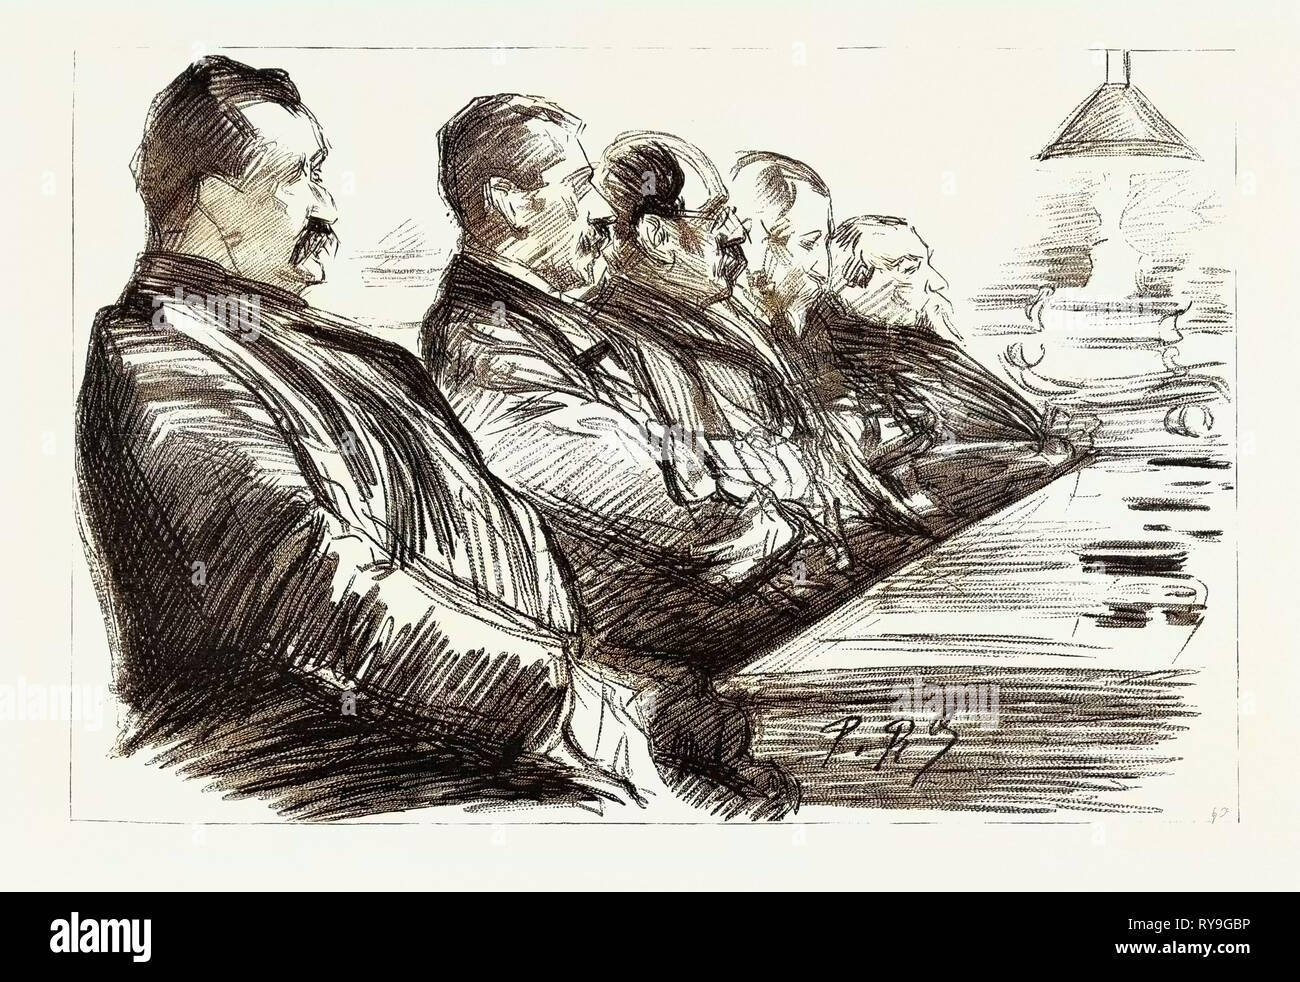 Los anarquistas en París, Francia, el juicio de Ravachol en el Palacio de Justicia: Algunos del jurado constituirse para tratar Ravachol, 1892 grabado Foto de stock